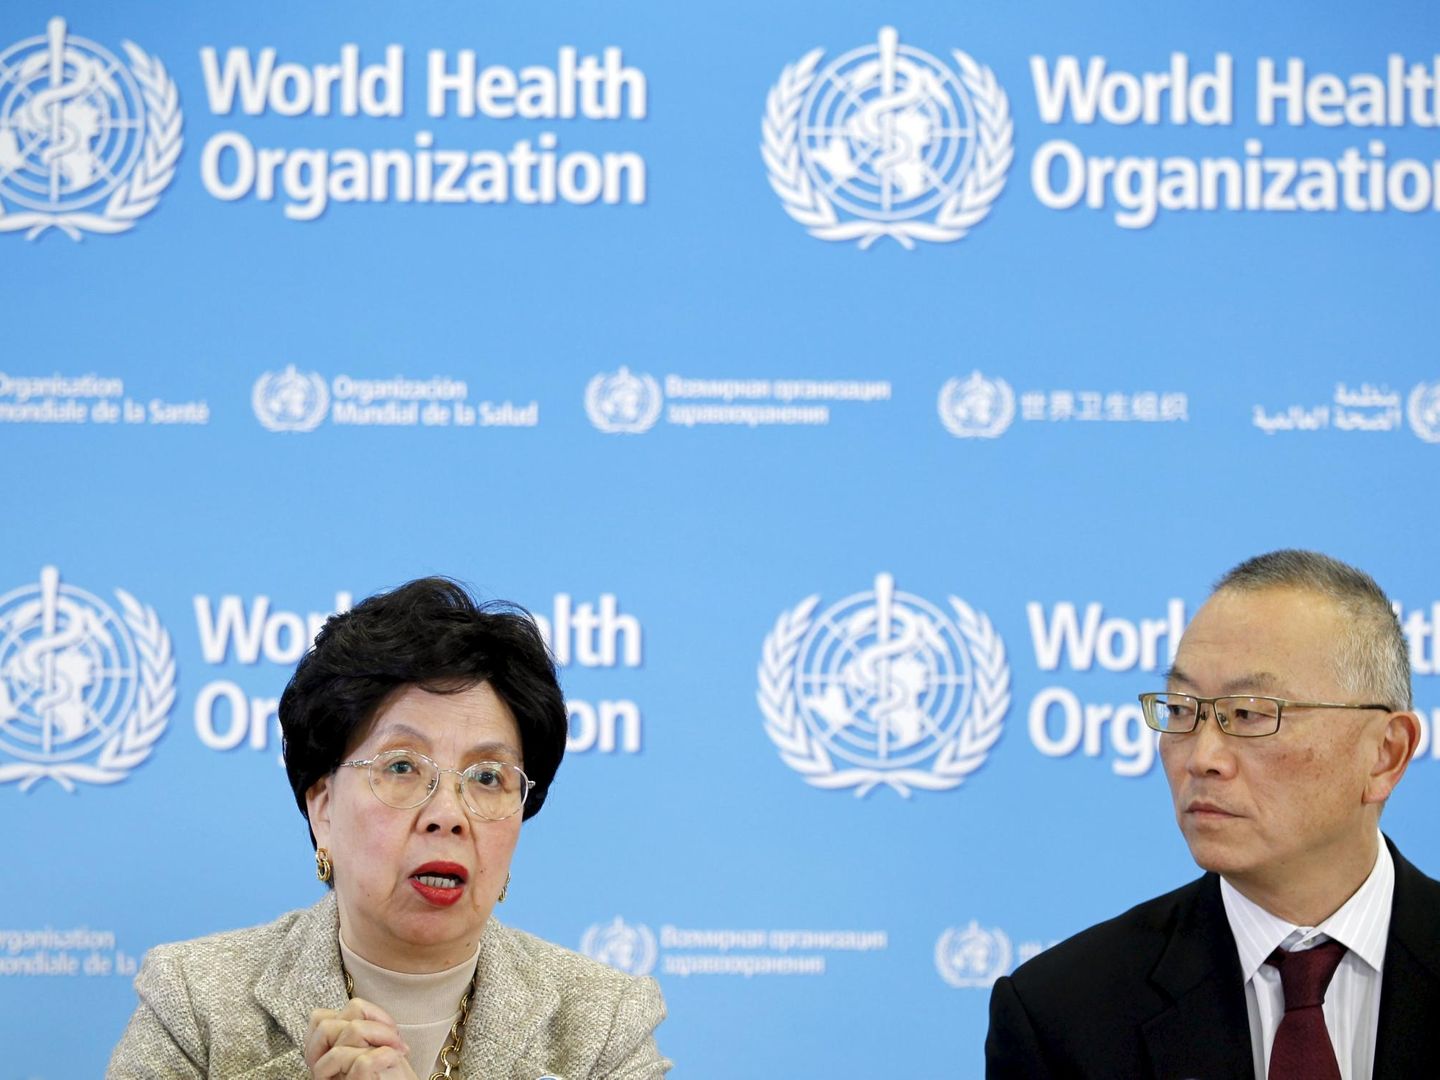 La resistencia antibiótica es una de las grandes preocupaciones de la OMS. Su directora general, Margaret Chan, lanzó una campaña en 2015 advirtiendo del reto al que se enfrenta el mundo. (Pierre Albouy/Reuters)